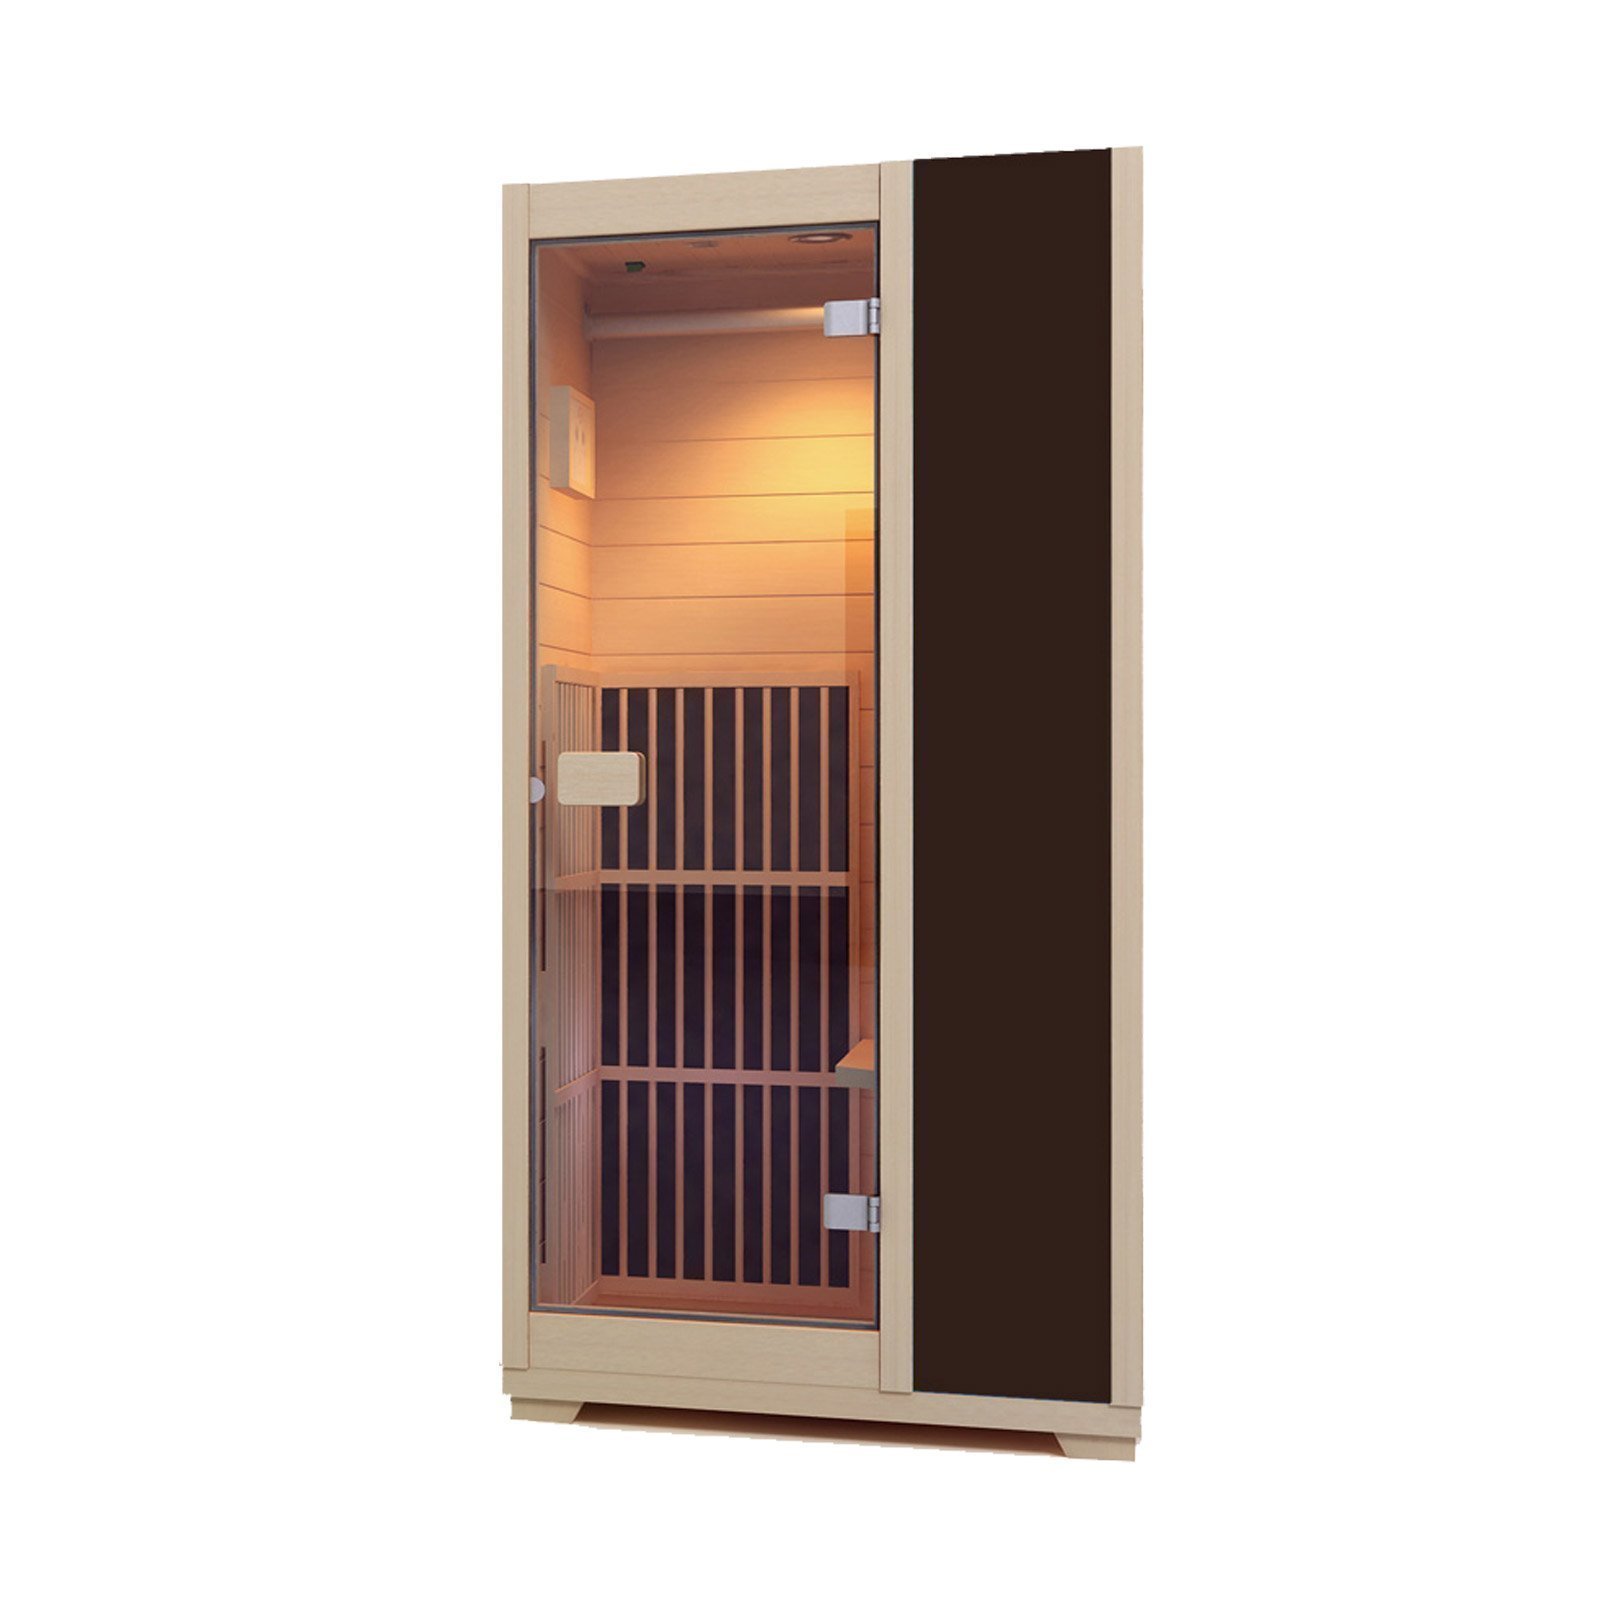 New Low EMF Zen 'Brighton' Infrared Sauna ZIV015 - Brown